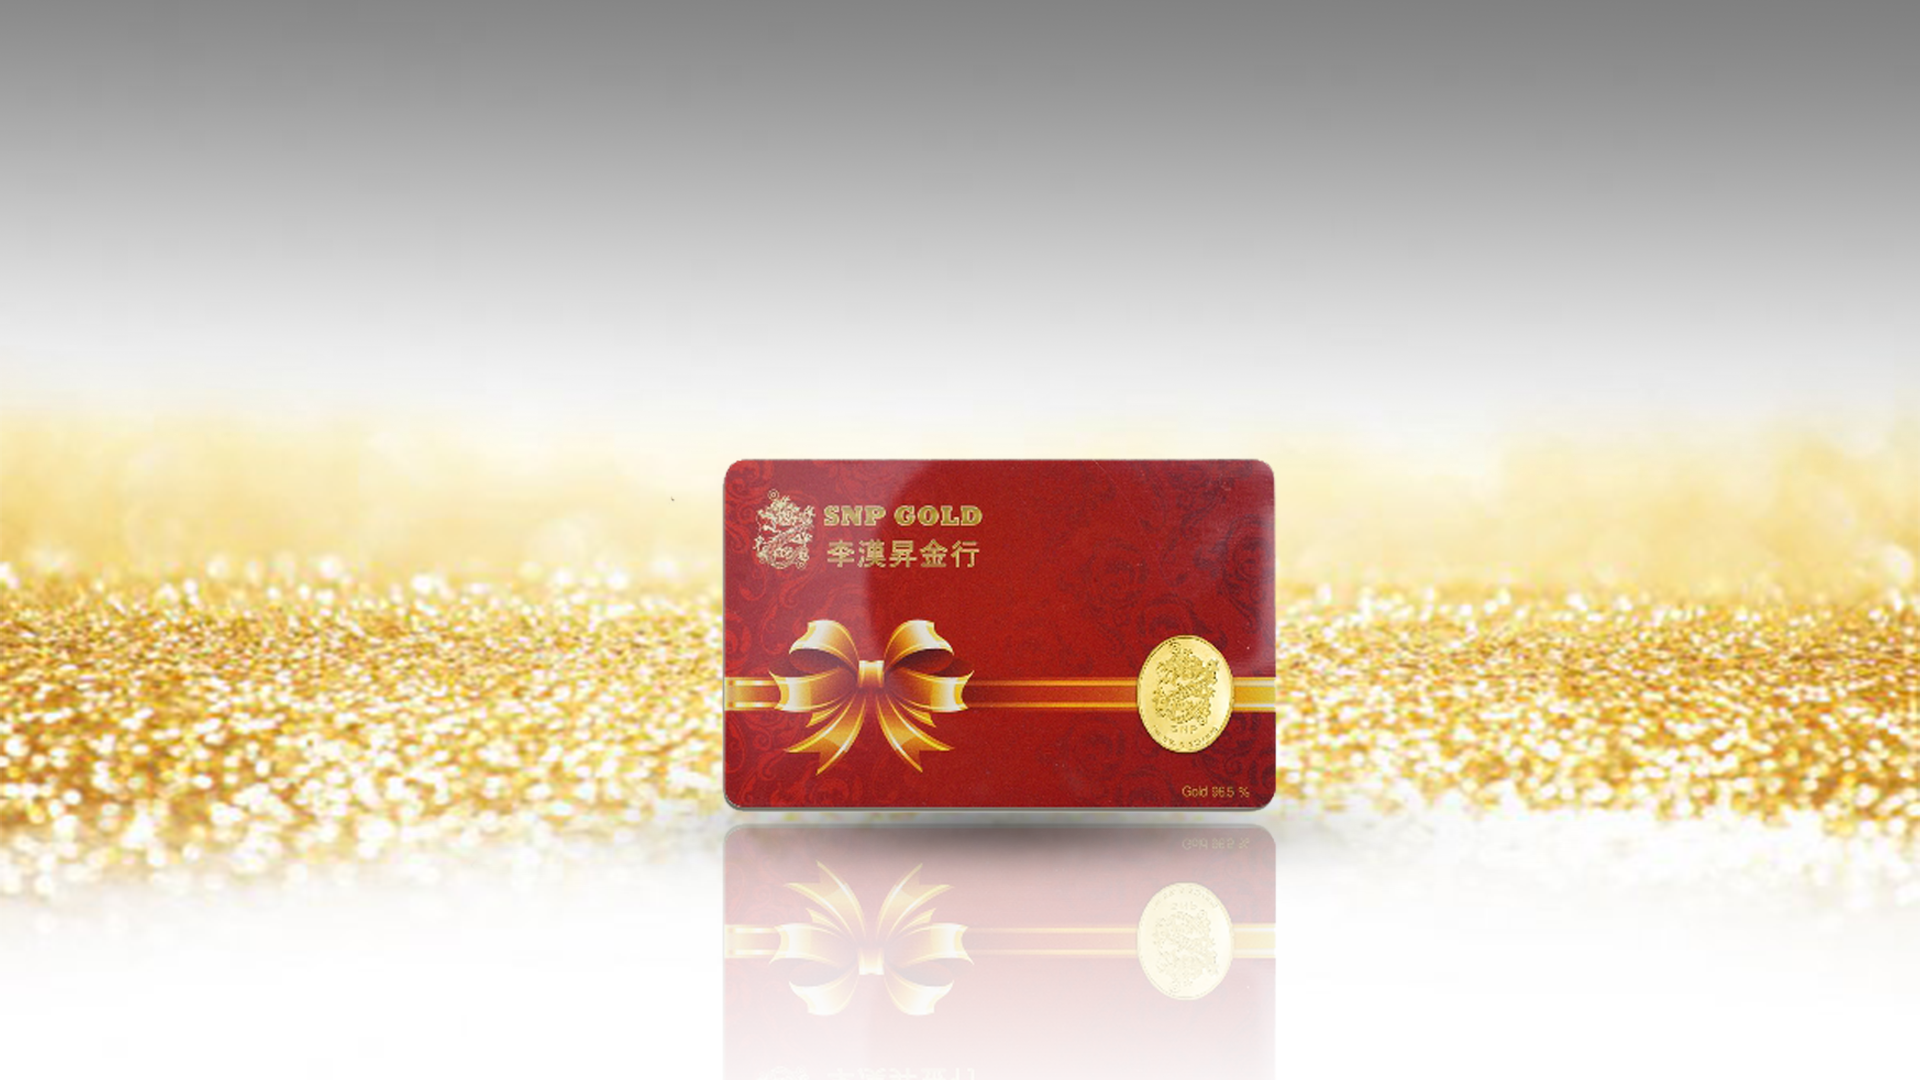 SSNP GOLD 3 ทองคำแท่งแท้ 96.5% น้ำหนัก 0.2 กรัม พร้อมใบรับประกันทอง